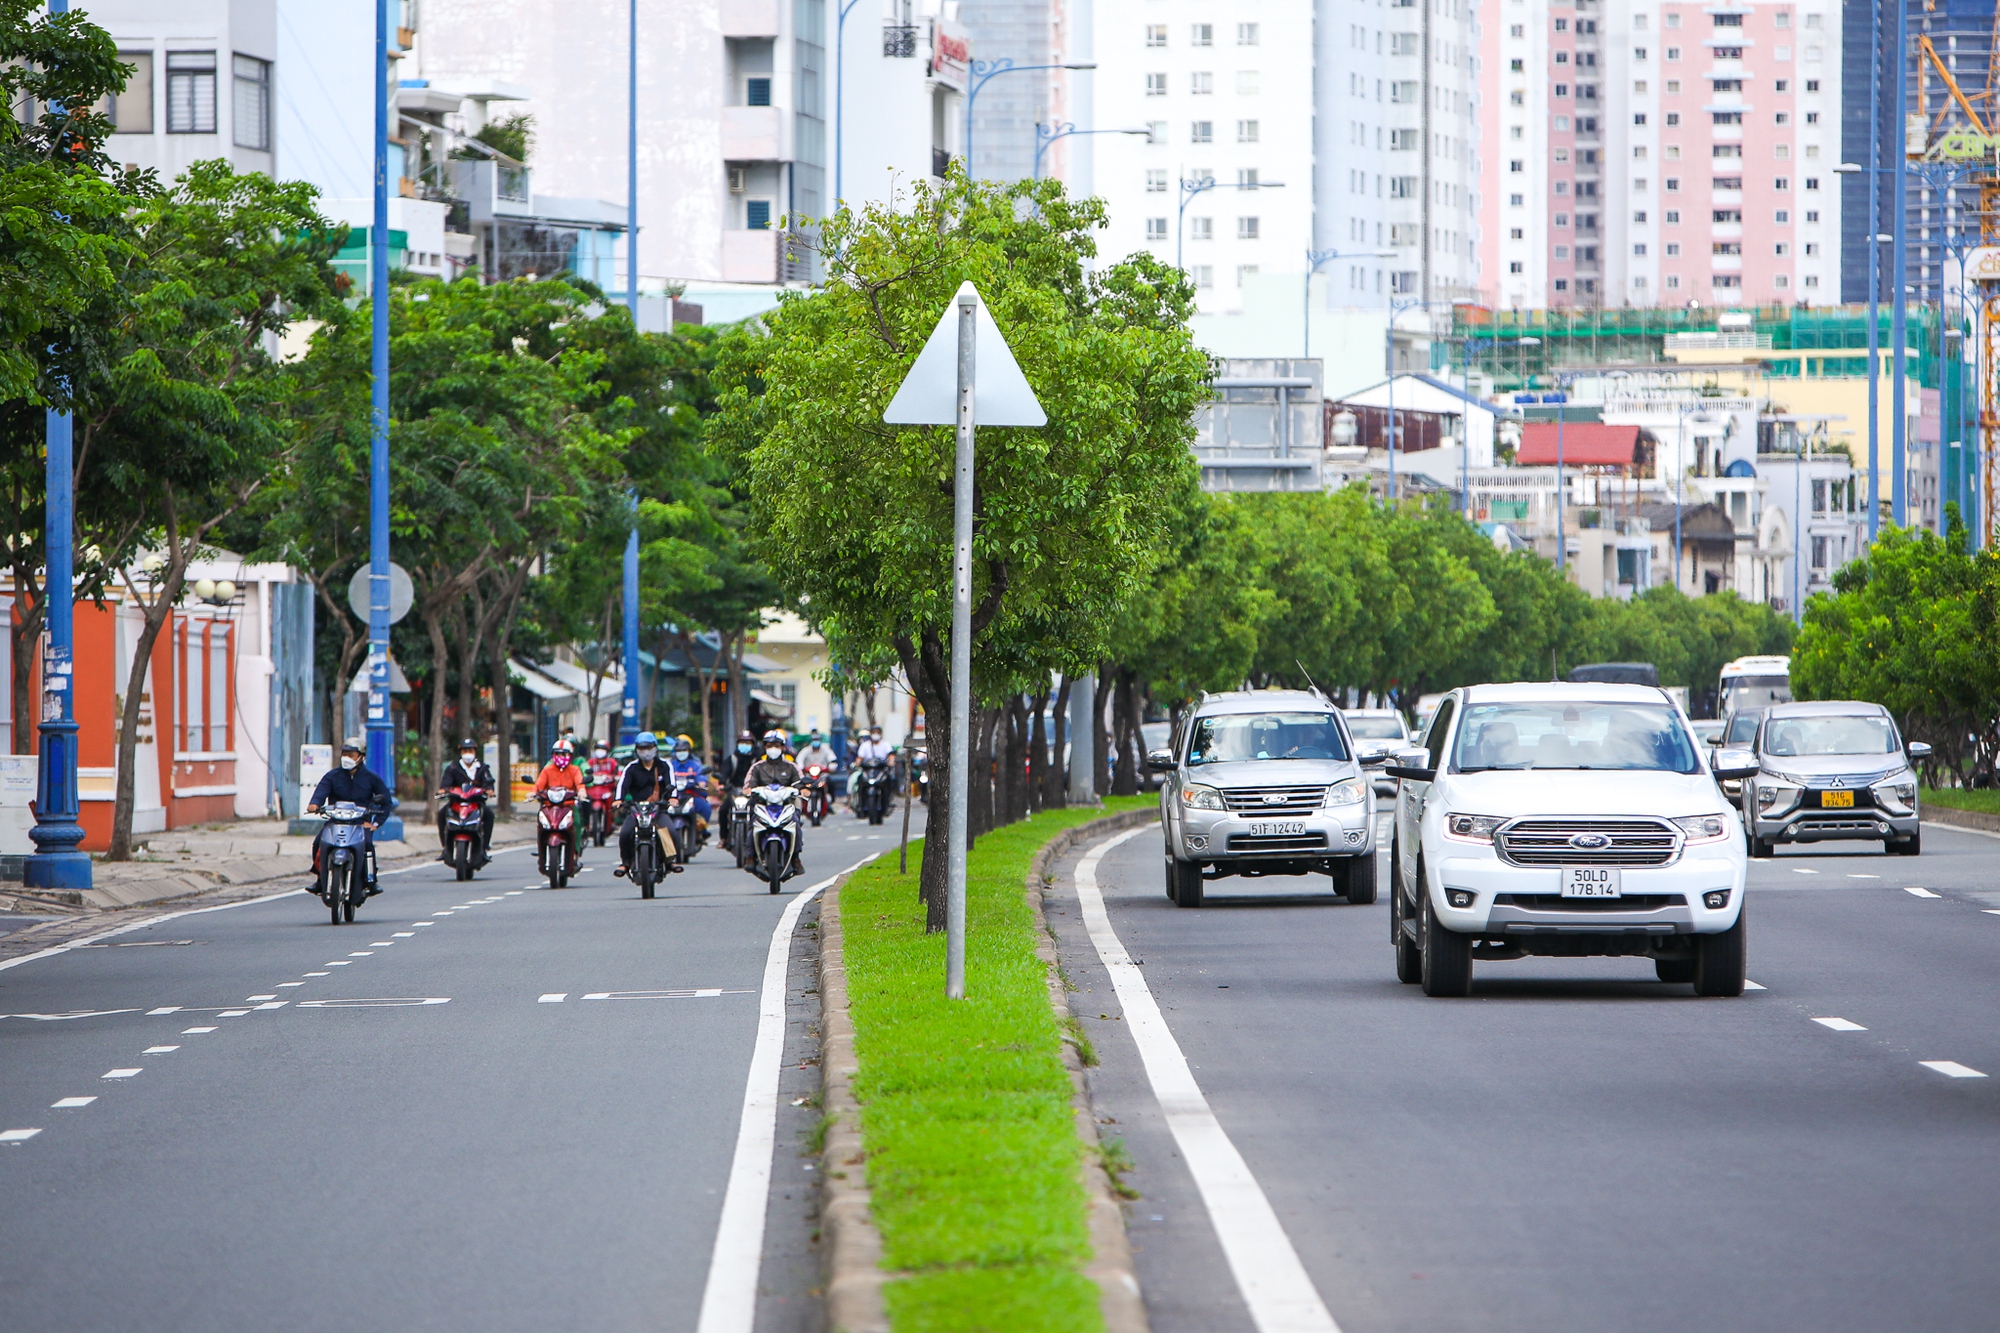 Cận cảnh đại lộ rộng 70 m, sắp có tuyến BRT đầu tiên ở TP. HCM - Ảnh 3.